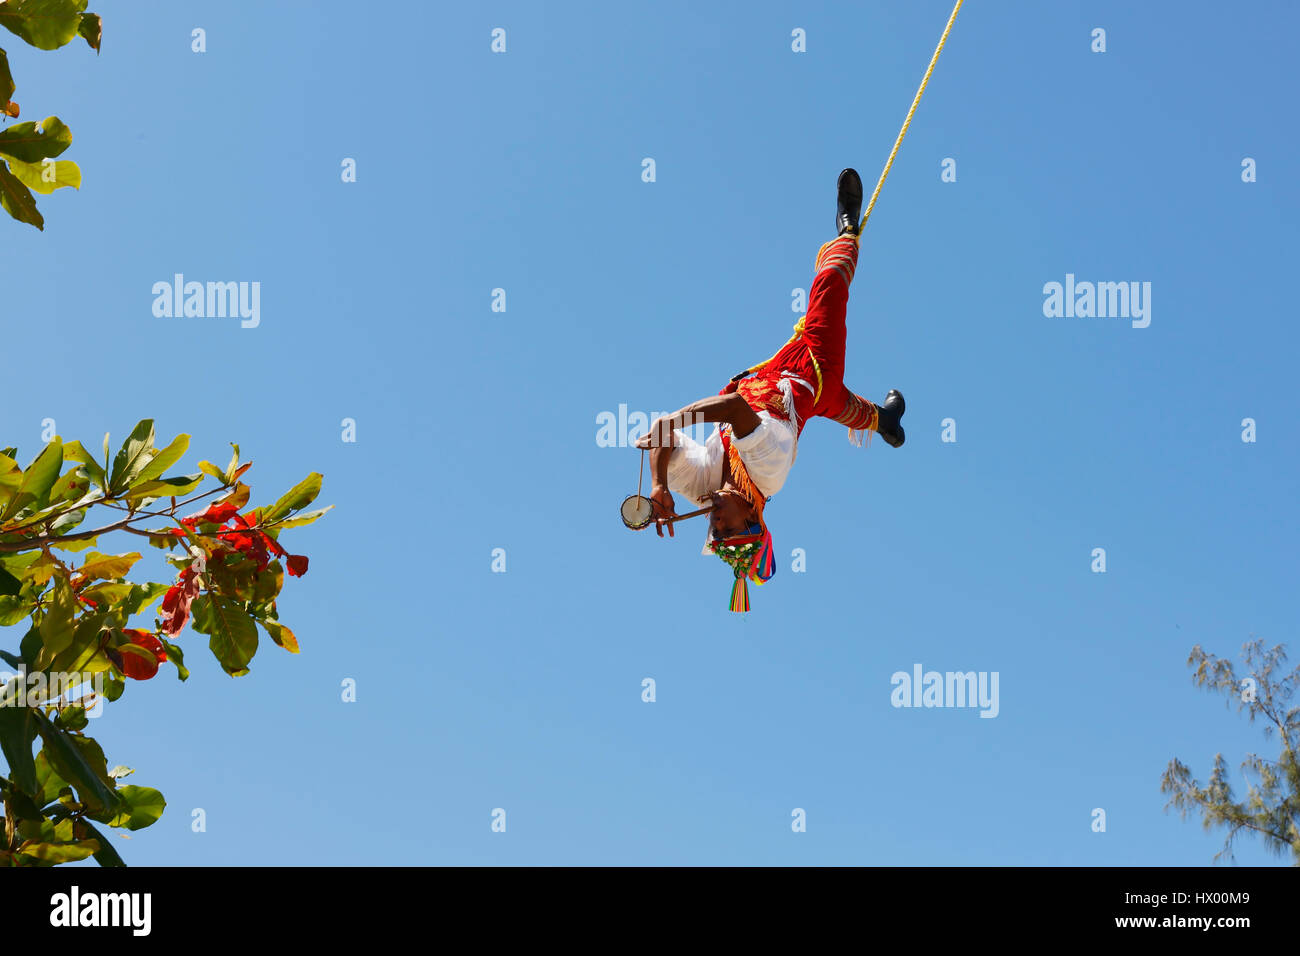 Papantla hommes volants homme volant à Tulum, Mexique Banque D'Images